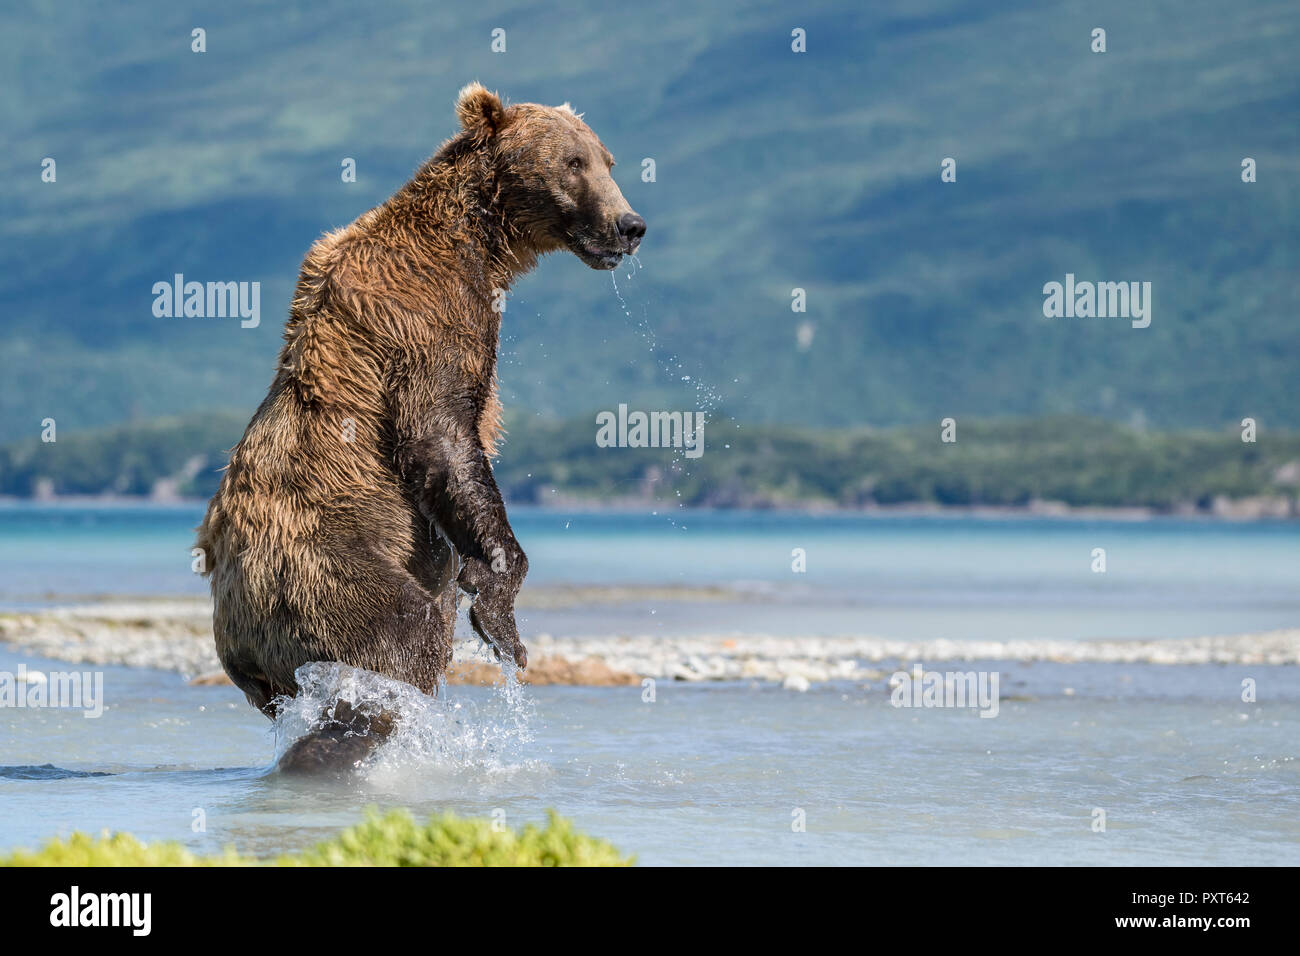 Brown bear (Ursus Arctos), standing upright in the water, Katmai National Park, Alaska, USA Stock Photo